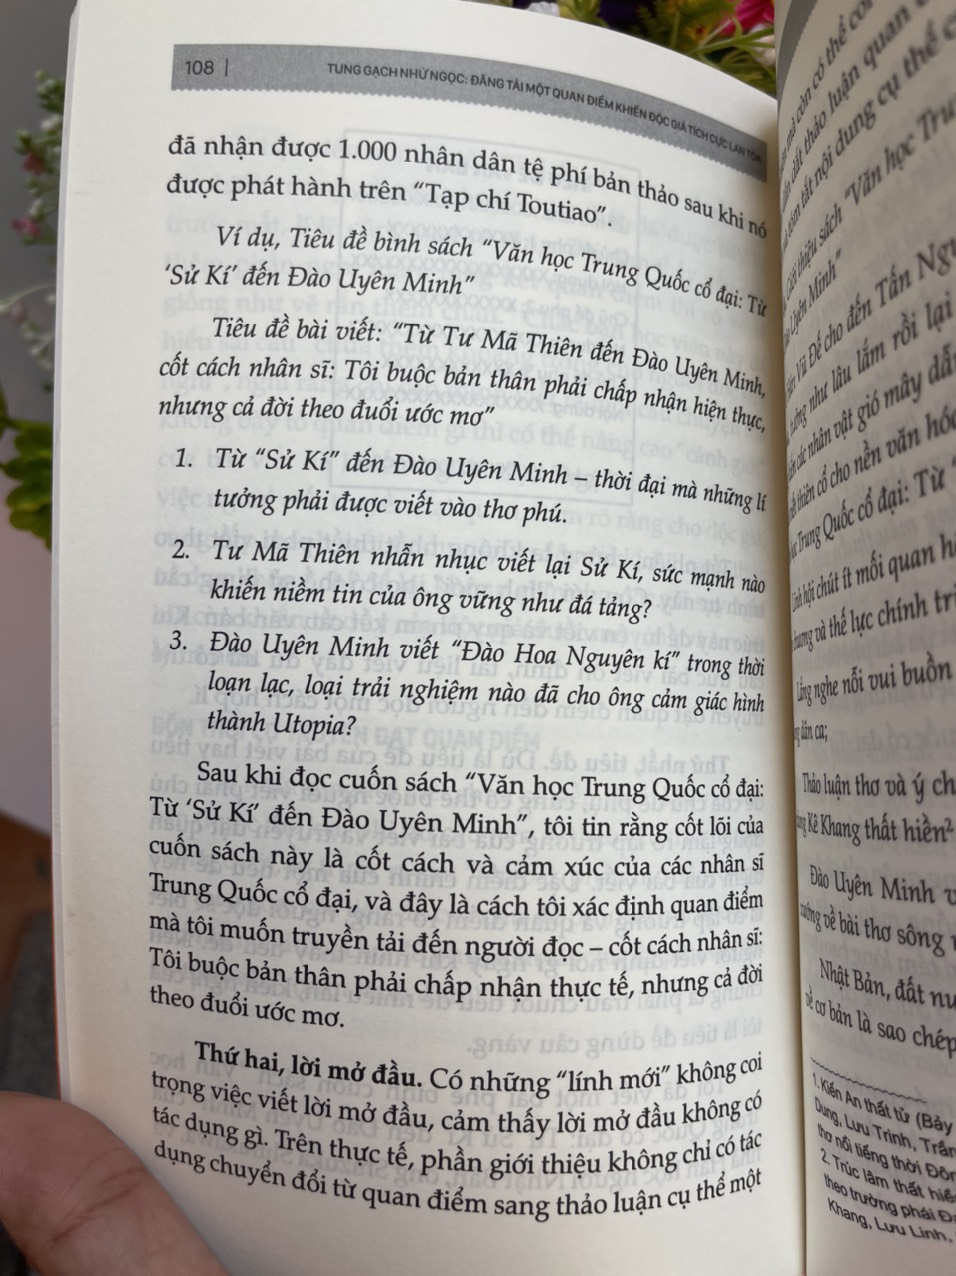 BỘ 3 CUỐN BÍ KÍP HÔ BIẾN THÀNH CONTENT VÀNG: Phương pháp đọc và ghi chép thông minh, Tư duy viết lách có 1 - 0 - 2 bạn cần biết, Kỹ thuật viết thôi miên độc giả - Thích Nhược – Lê Minh Châu dịch - Bizbooks